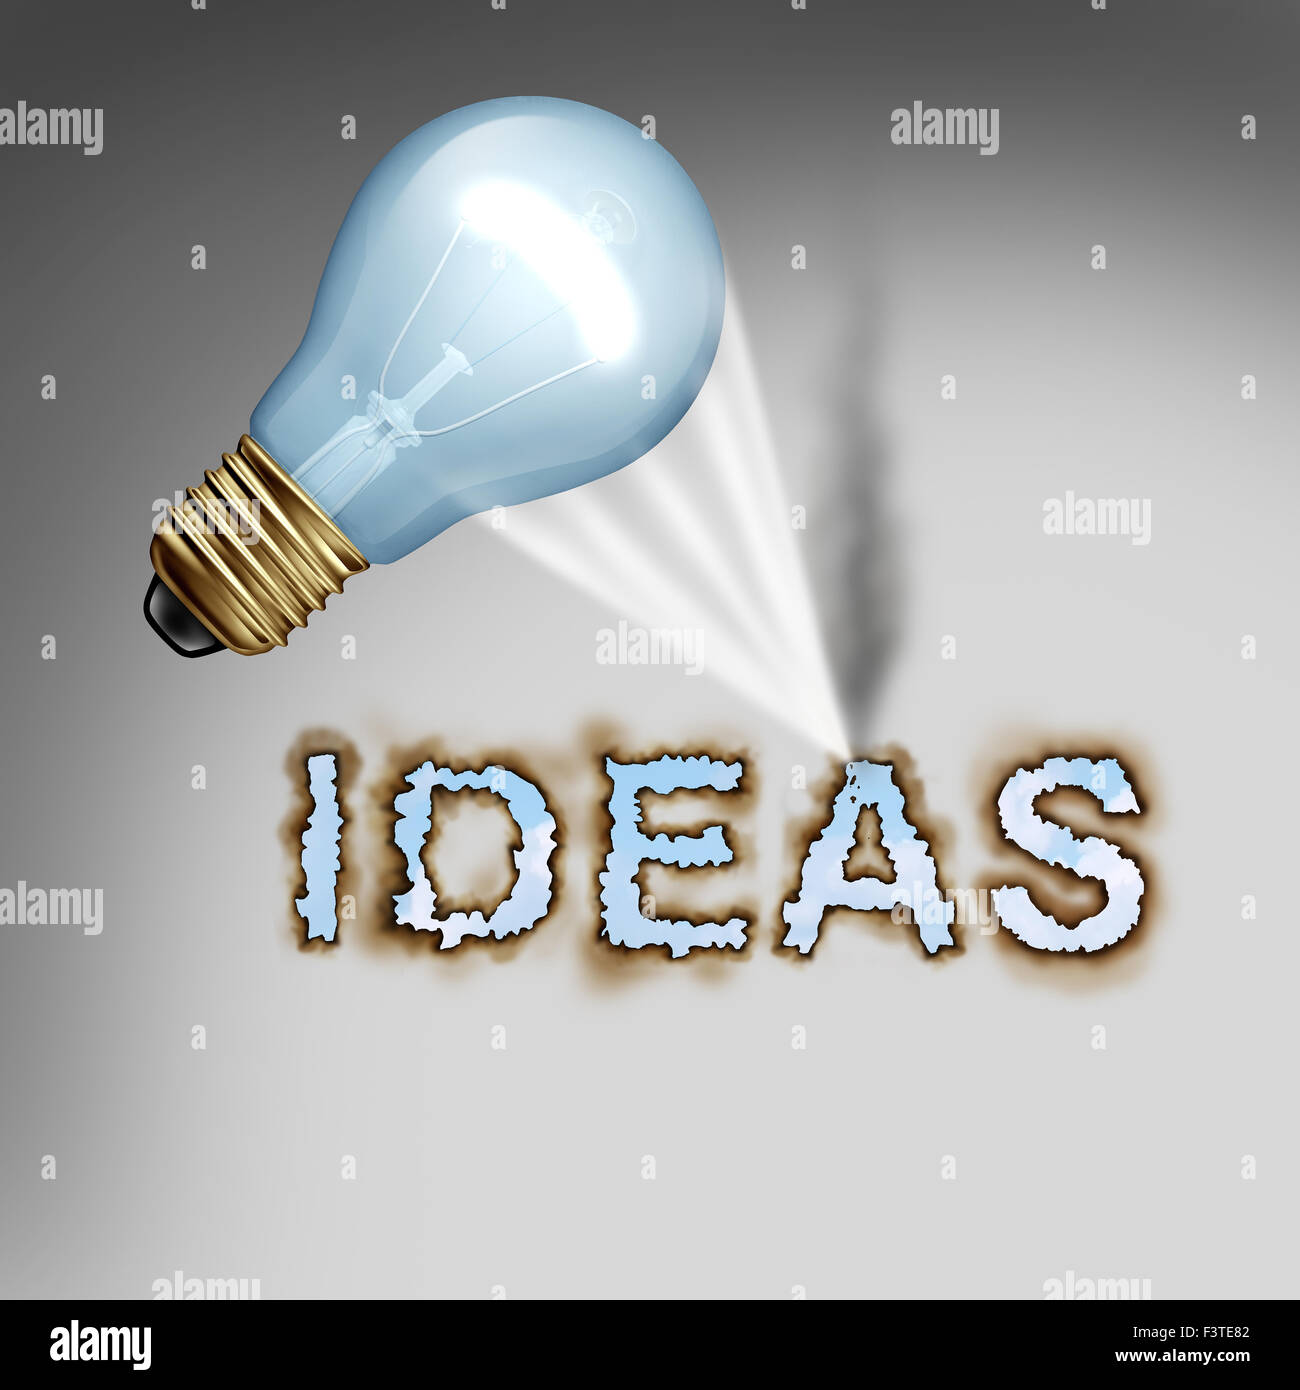 Idee Konzept kreative Symbol mit einer Glühbirne, die brennenden Buchstaben als Metapher für die Energie der Kreativität und leistungsstarke Design Papier einen heißen konzentrierten Lichtstrahl reflektieren. Stockfoto